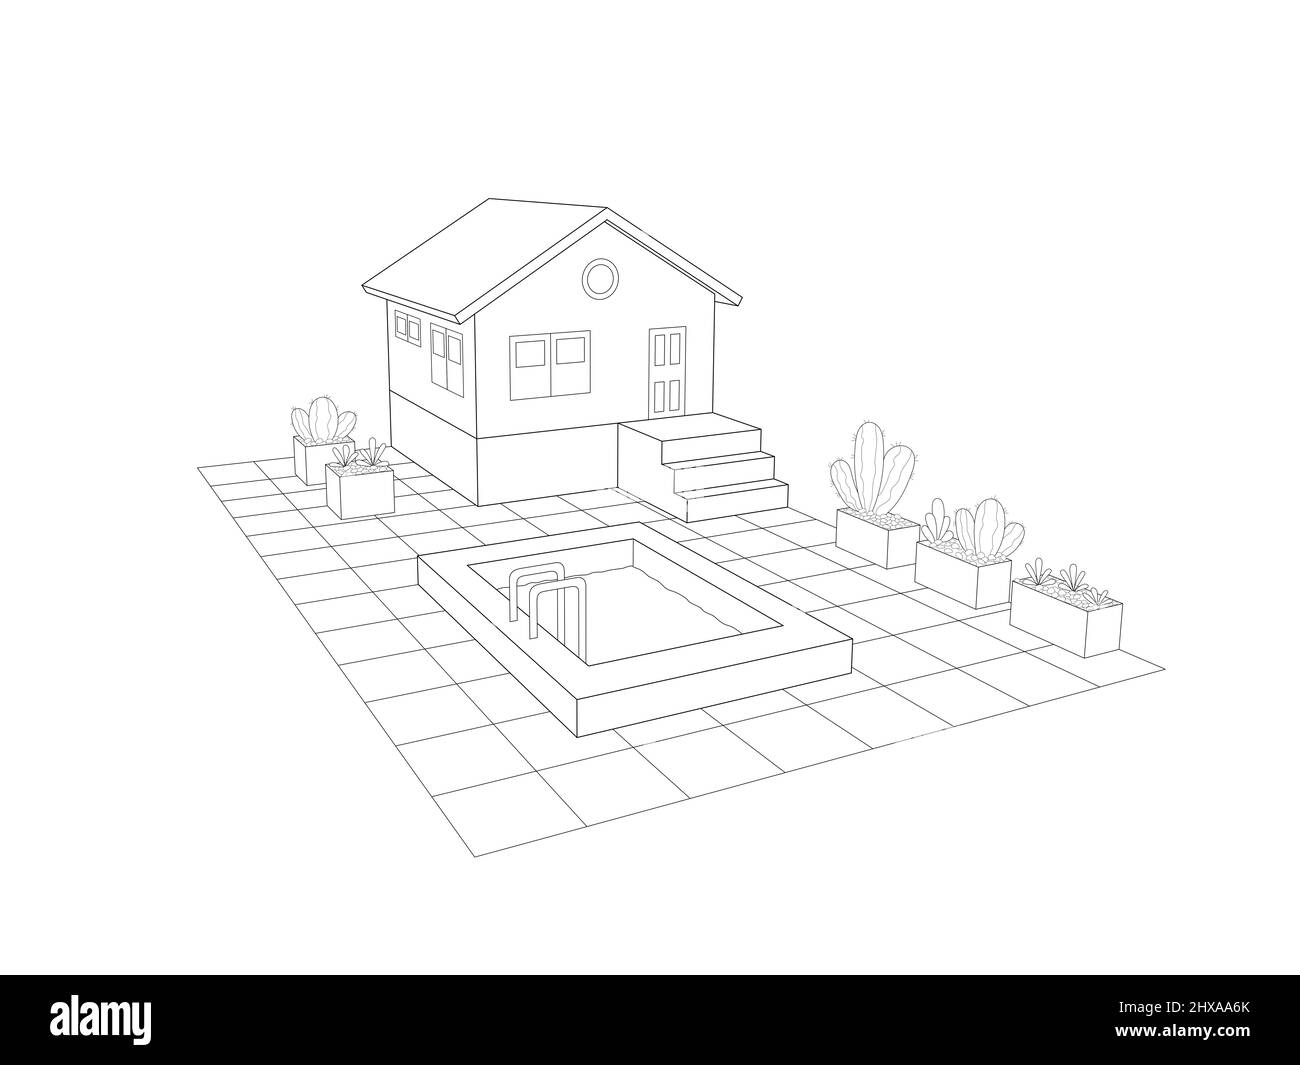 3d piccola casa di design esterno con area piscina e giardino con piante in vaso. vista prospettica Foto Stock